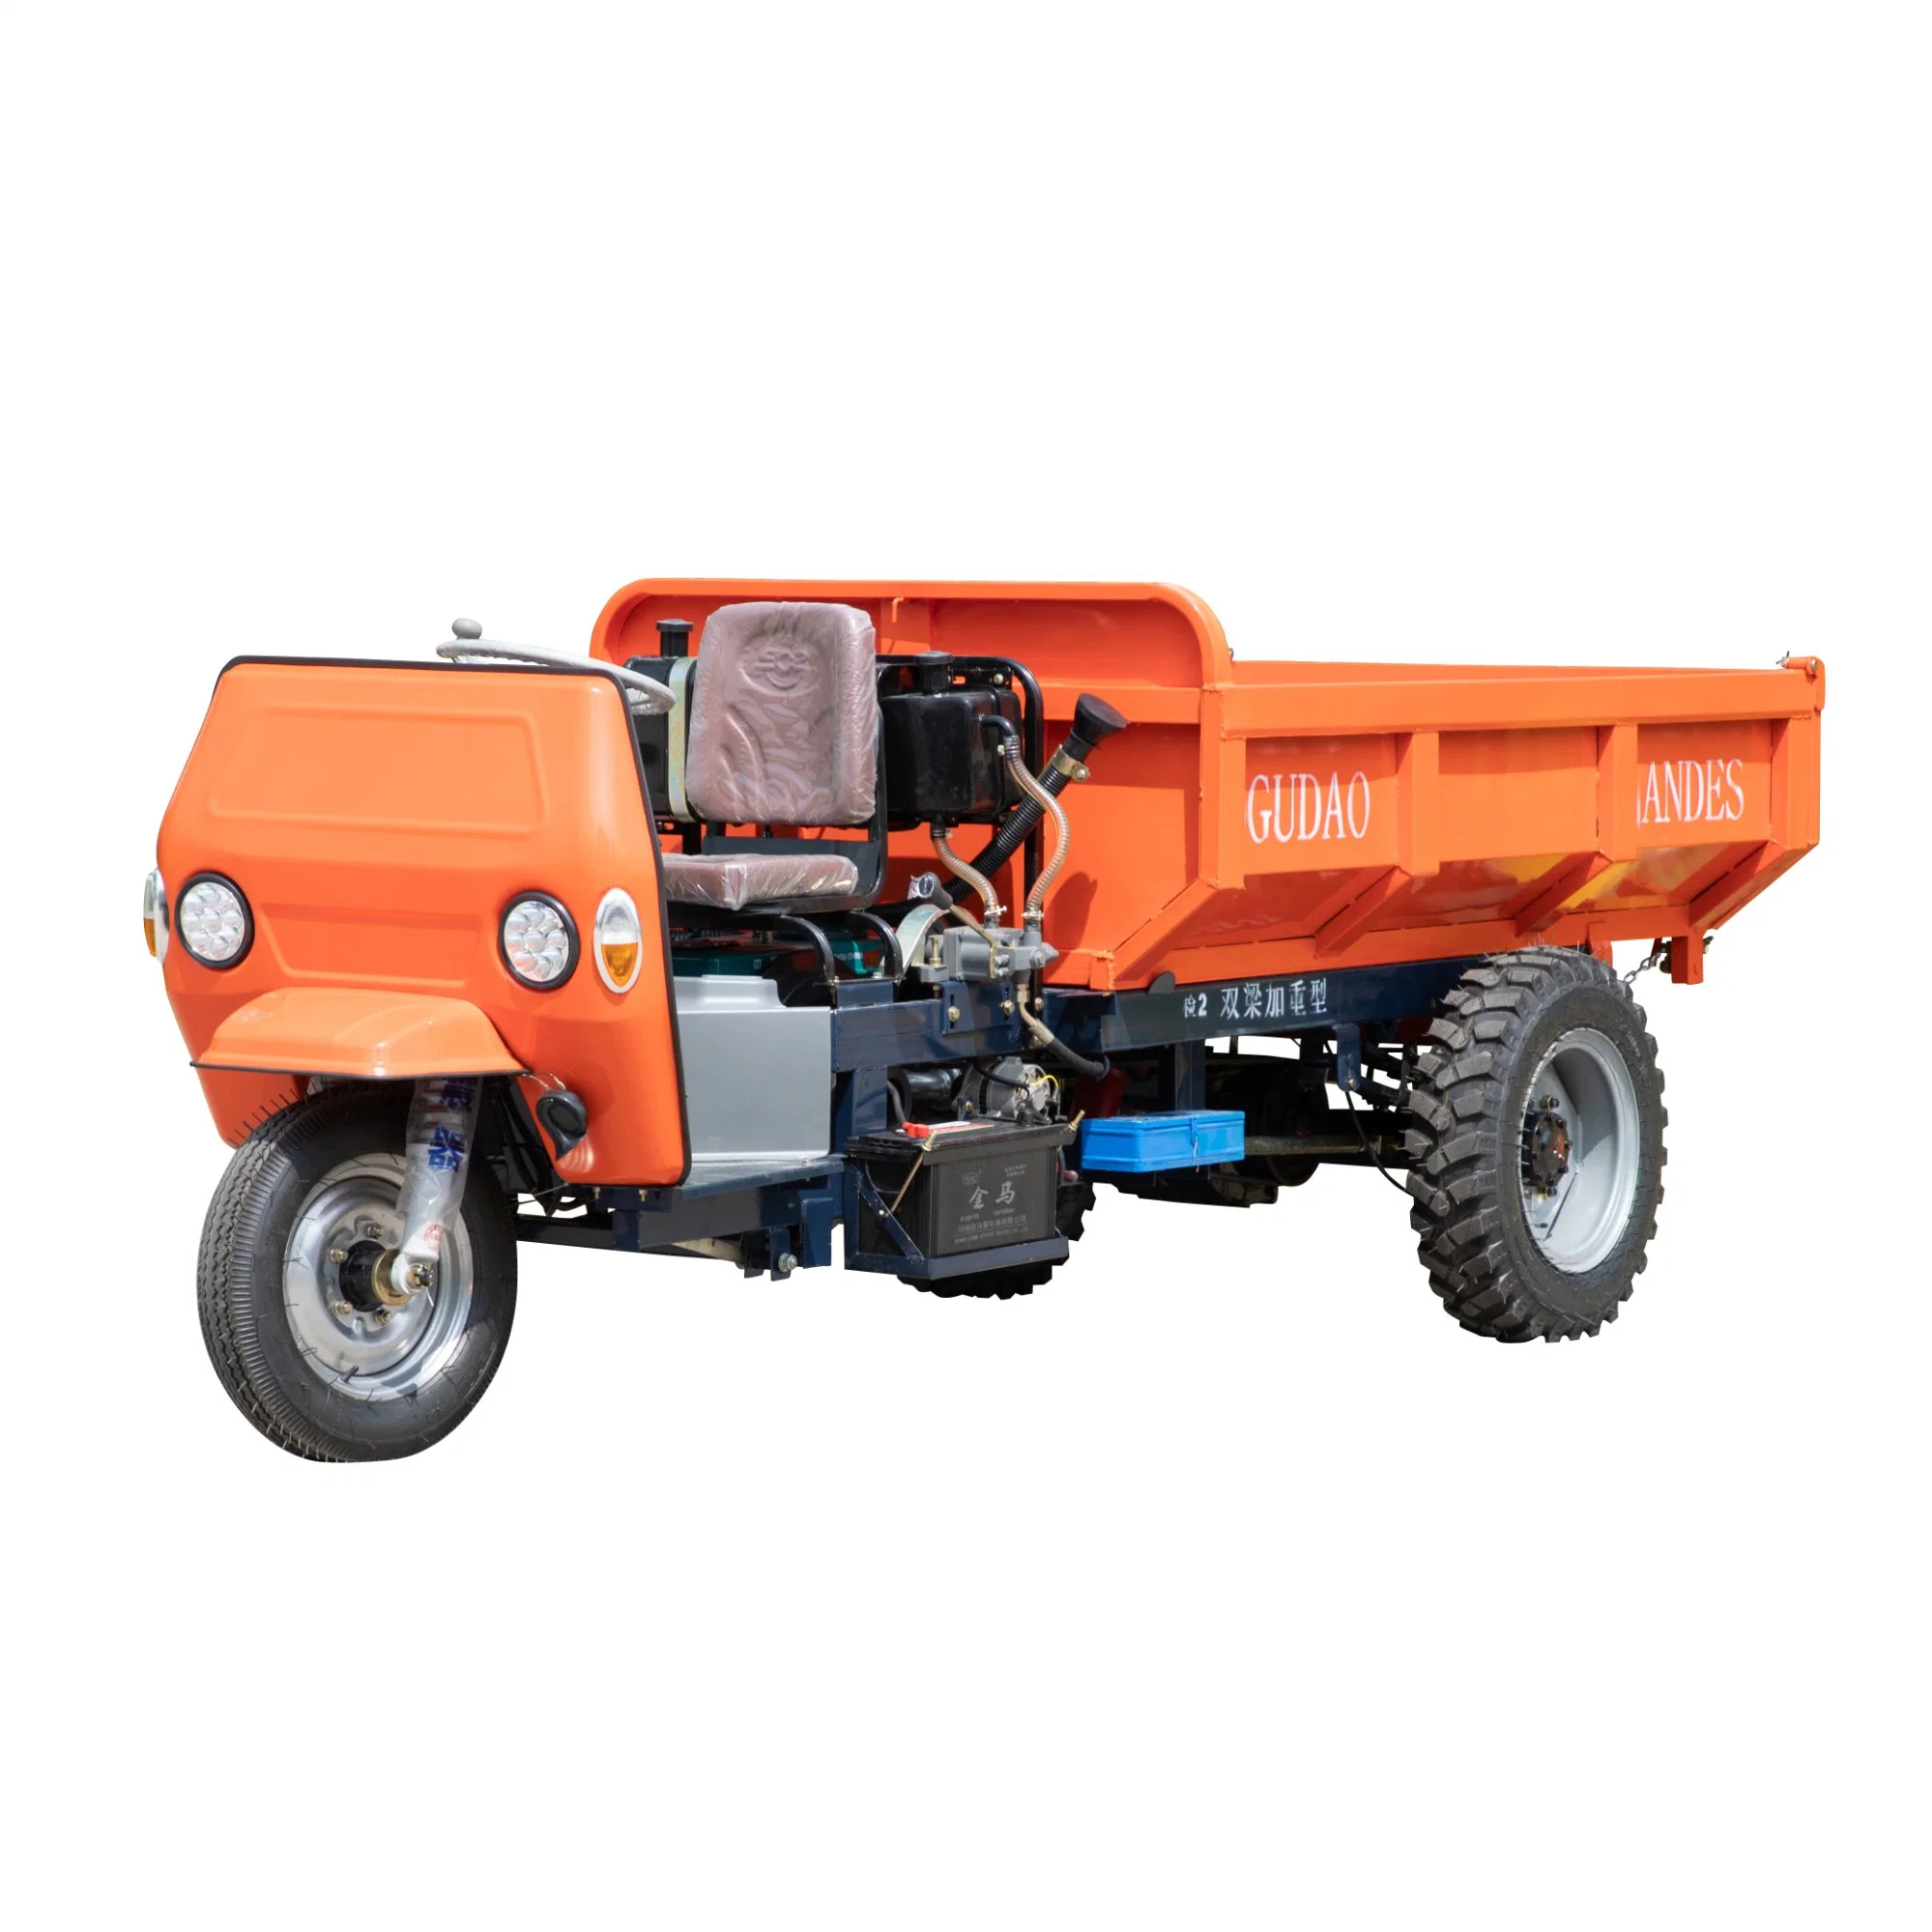 Mini-bomba Elektro Trike motociclo com motor Diesel de 2 toneladas Três rodas Constructiontriclo PARA Mineria